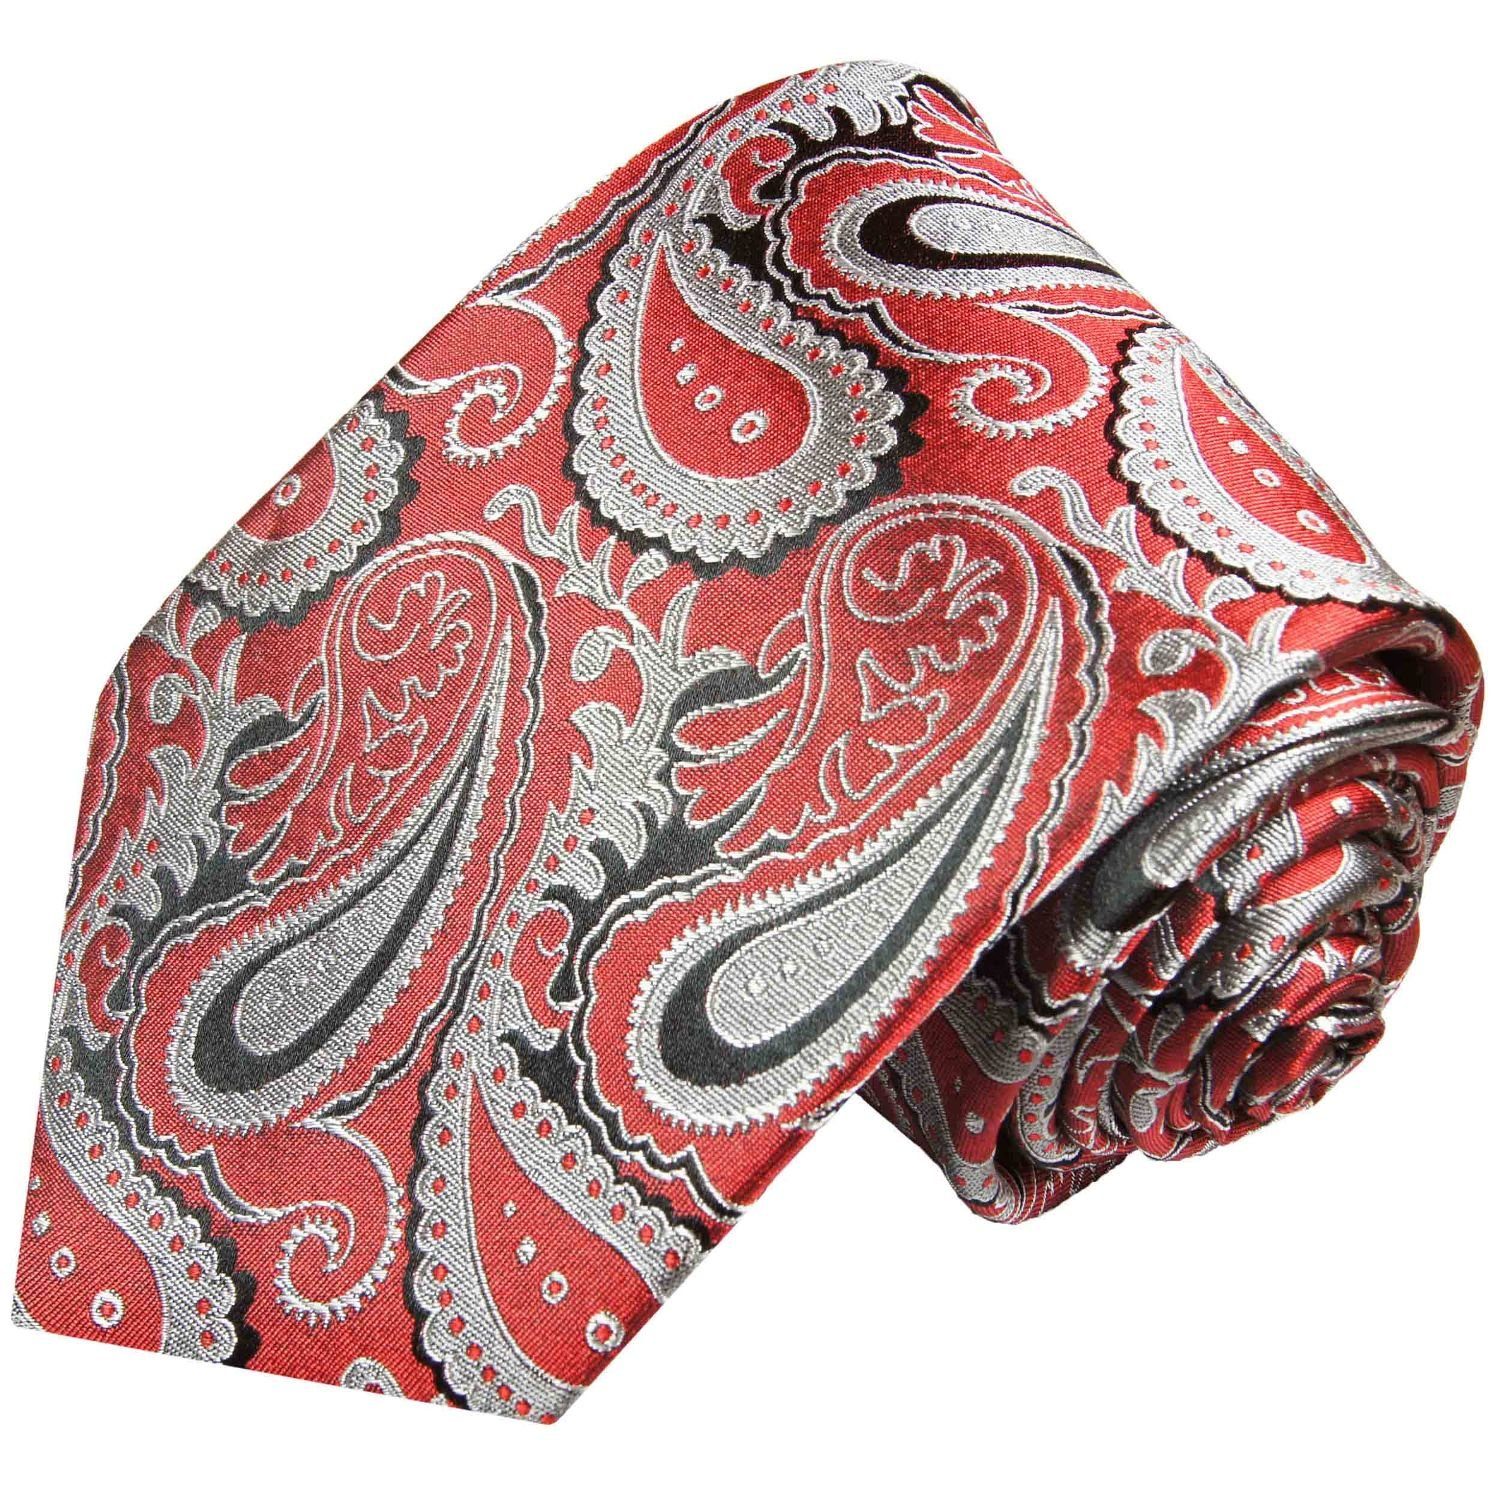 Herren Krawatten Paul Malone Krawatte Elegante Seidenkrawatte Herren Schlips modern paisley brokat 100% Seide Schmal (6cm), rot 